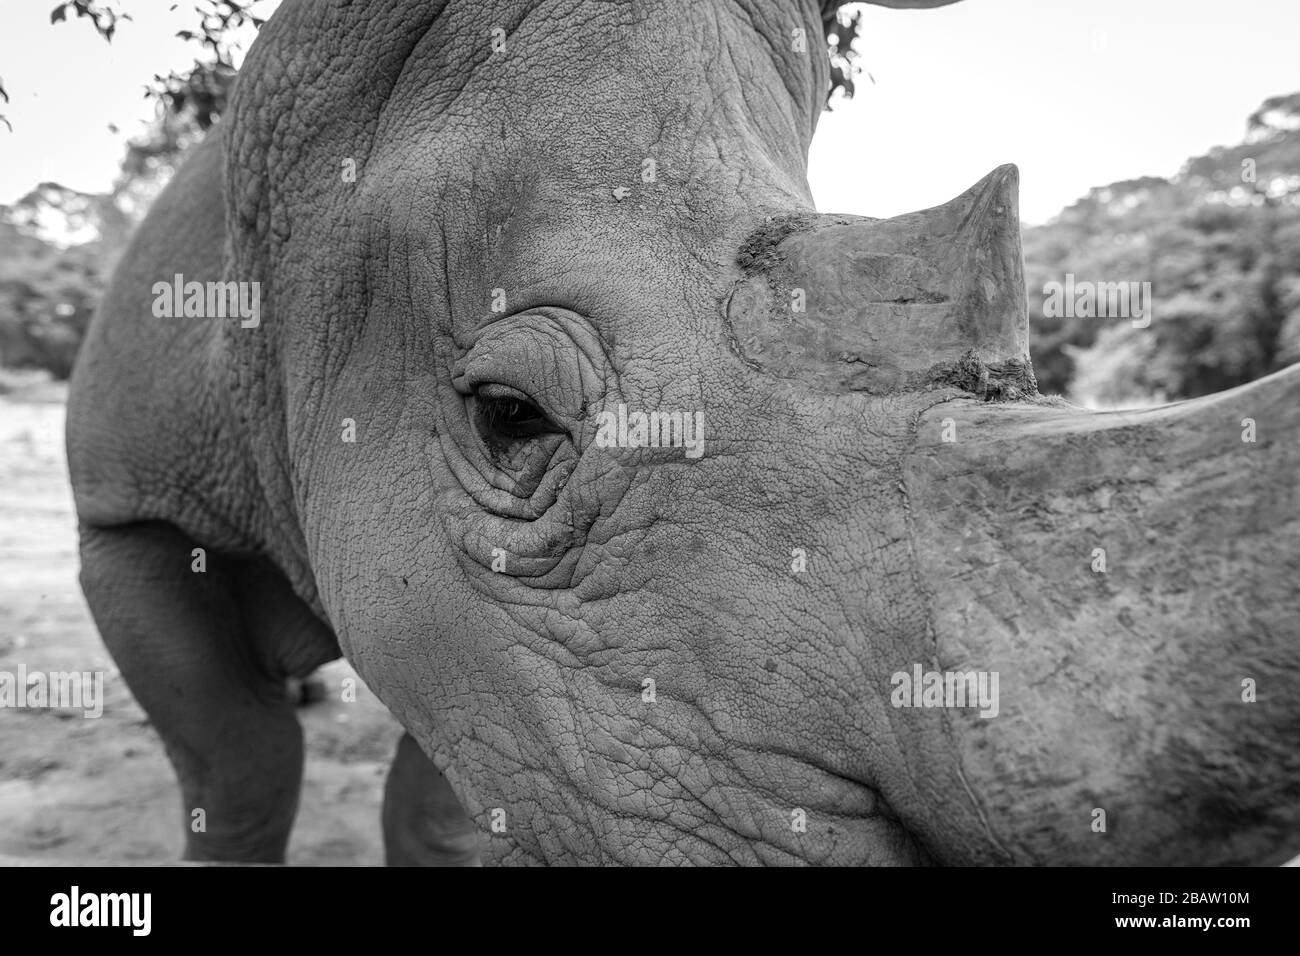 Gros plan sur un rhinocéros blanc du sud (Ceratotherium simum simum) au Centre d'éducation pour la faune de l'Ouganda, Entebbe, Ouganda Banque D'Images